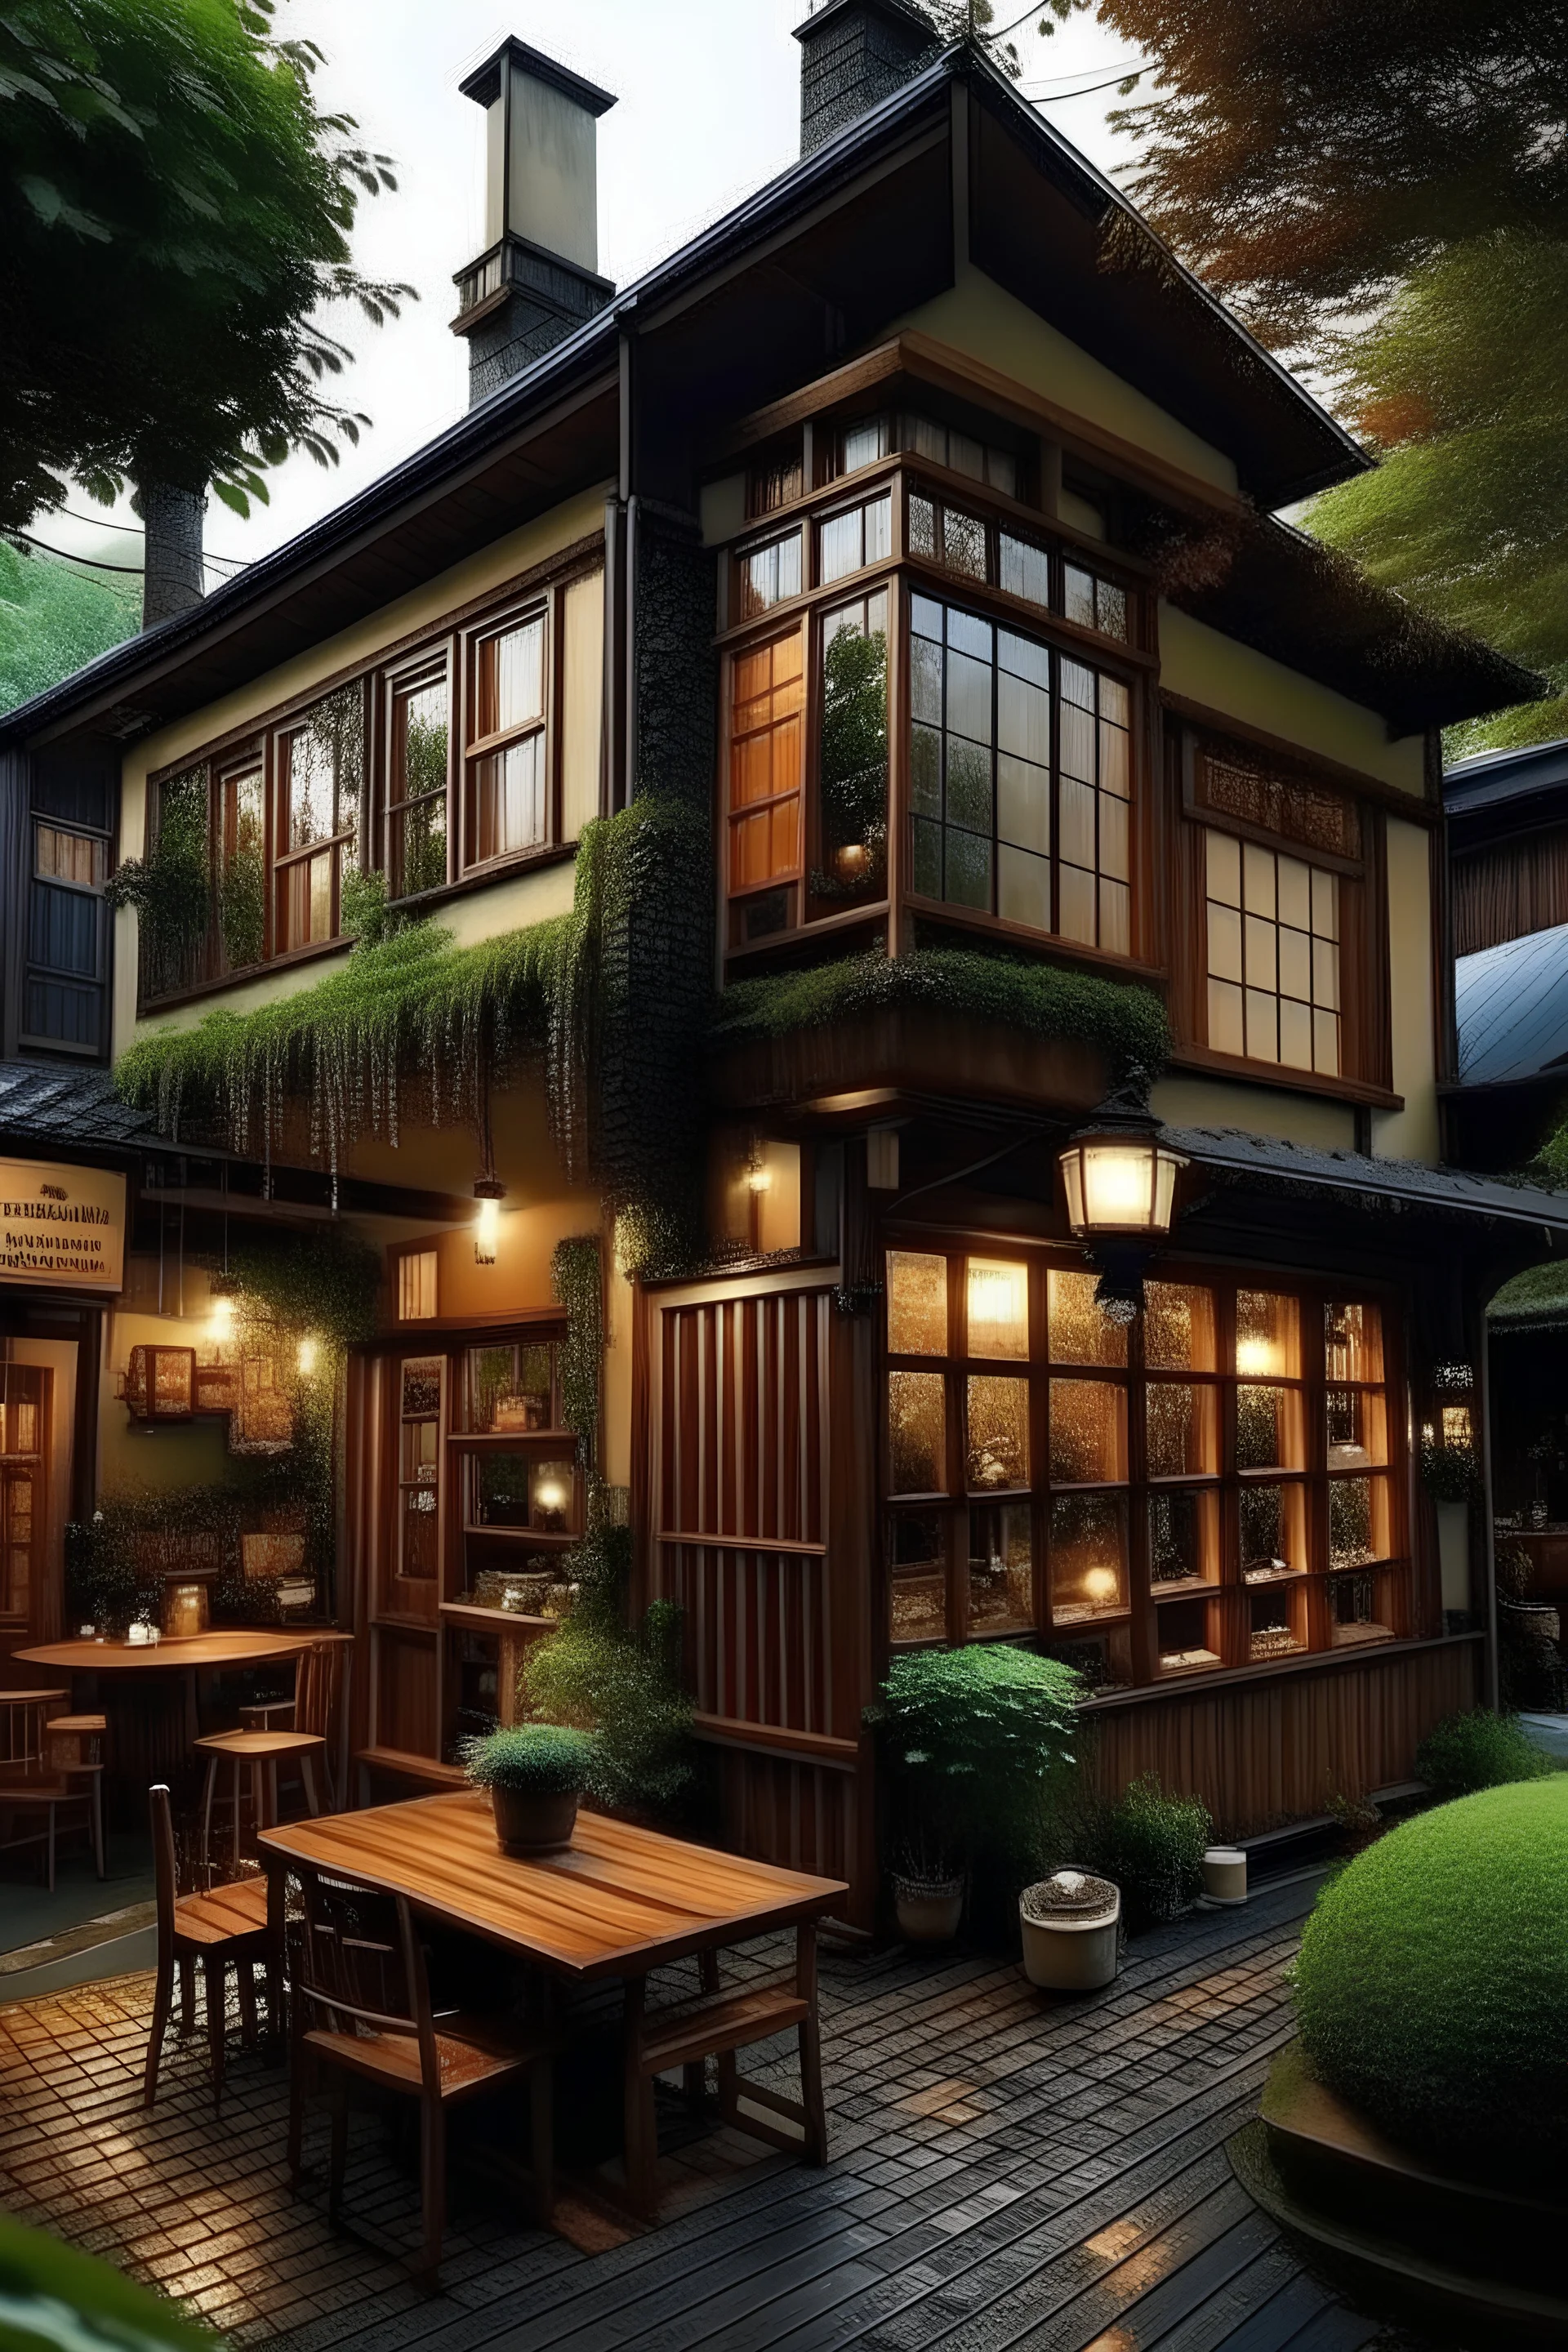 Quiero una casa unifamiliar de 2 pisos que a su vez funcione como una cafetería donde el ambiente se vea cálido y cómodo